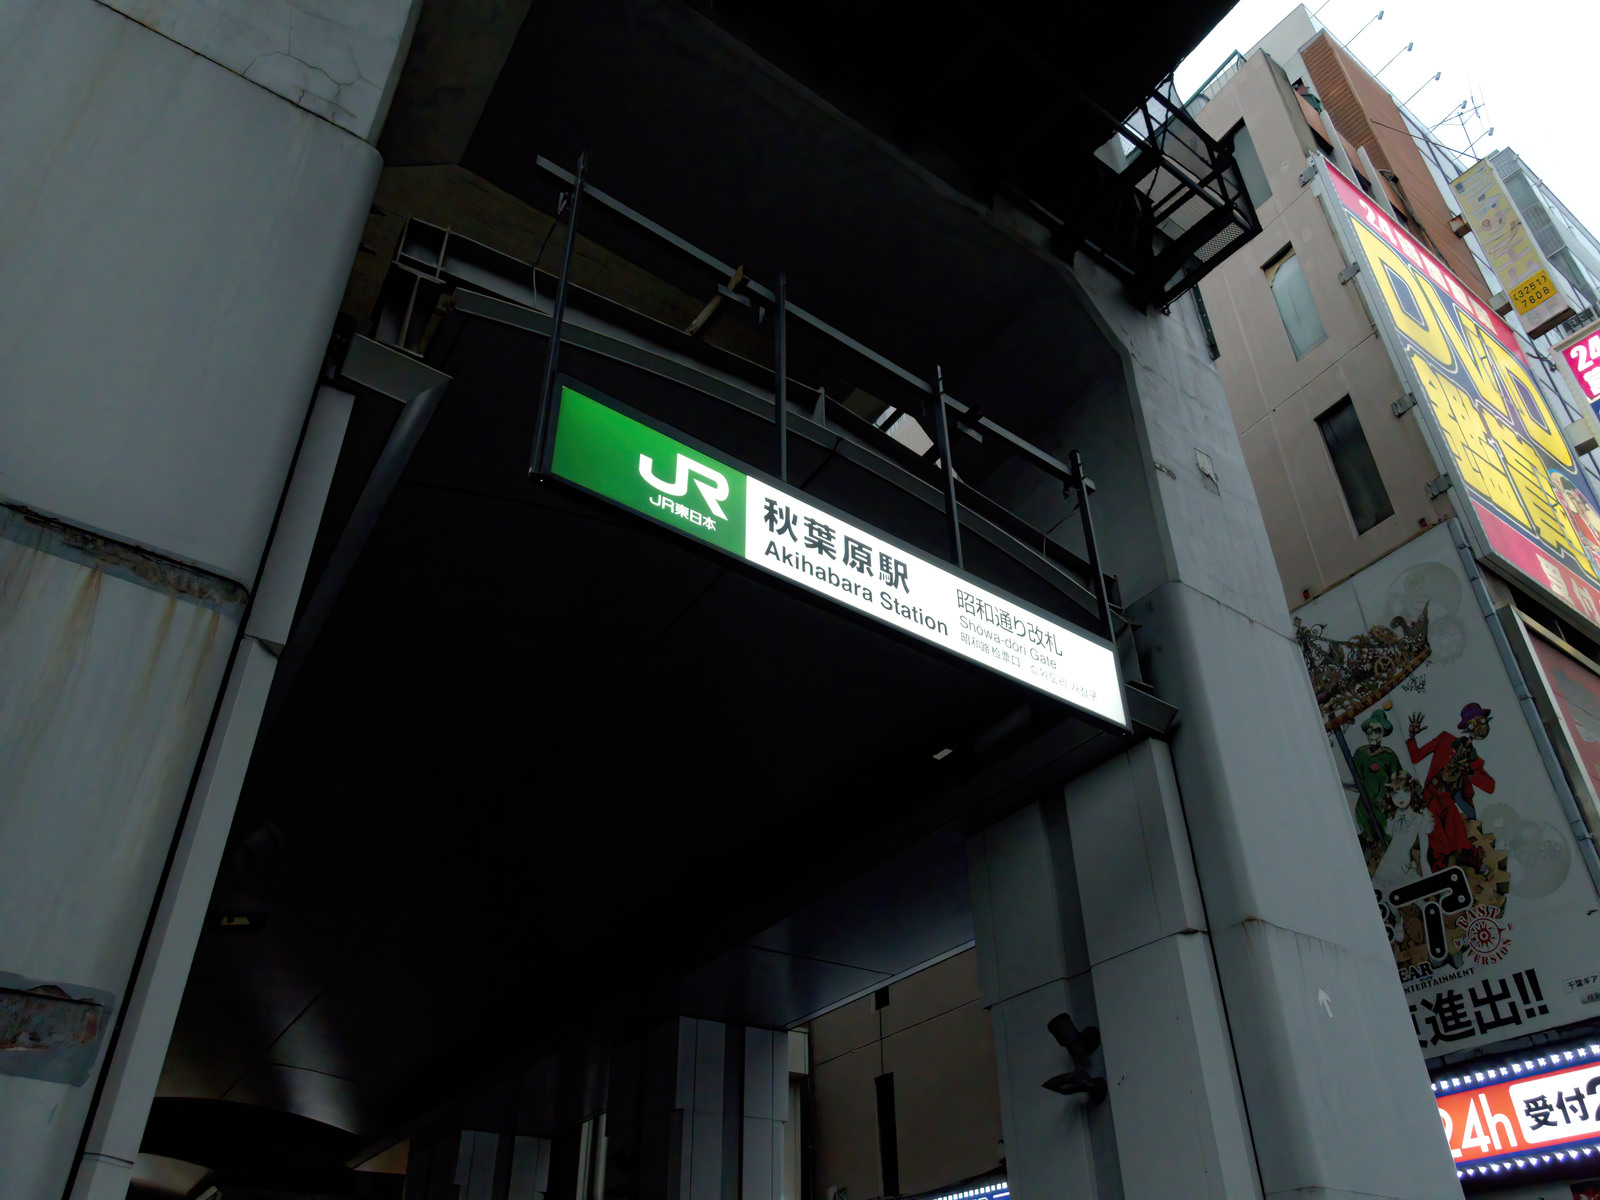 「秋葉原駅昭和通り改札入口 | フリー素材のぱくたそ」の写真